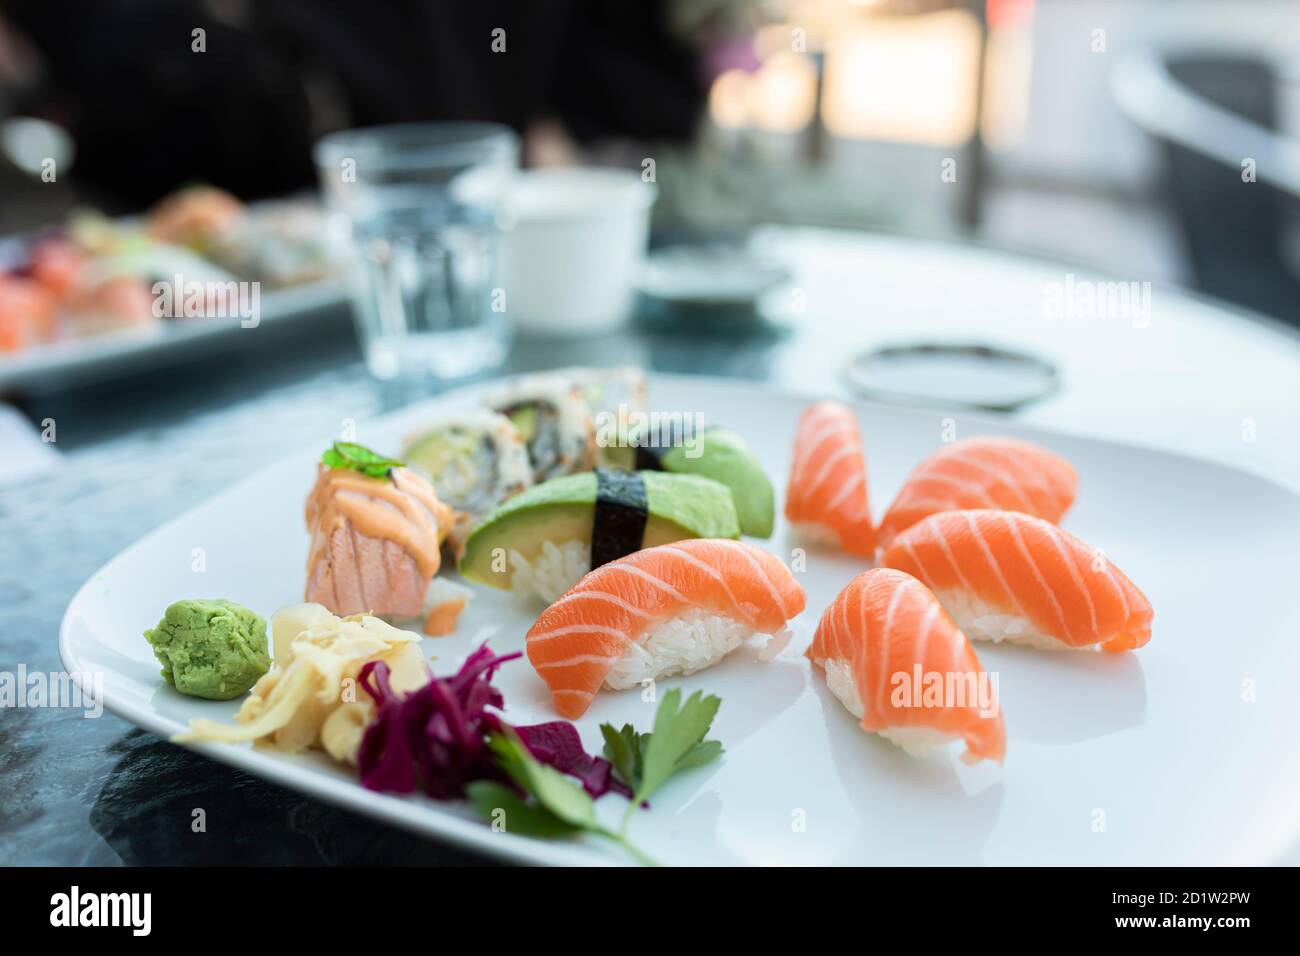 Plato de sushi en una mesa al aire libre en un restaurante. El plato tiene sushi nigiri con salmón, sushi nigiri con aguacate y rollitos de california. Dieta saludable Foto de stock